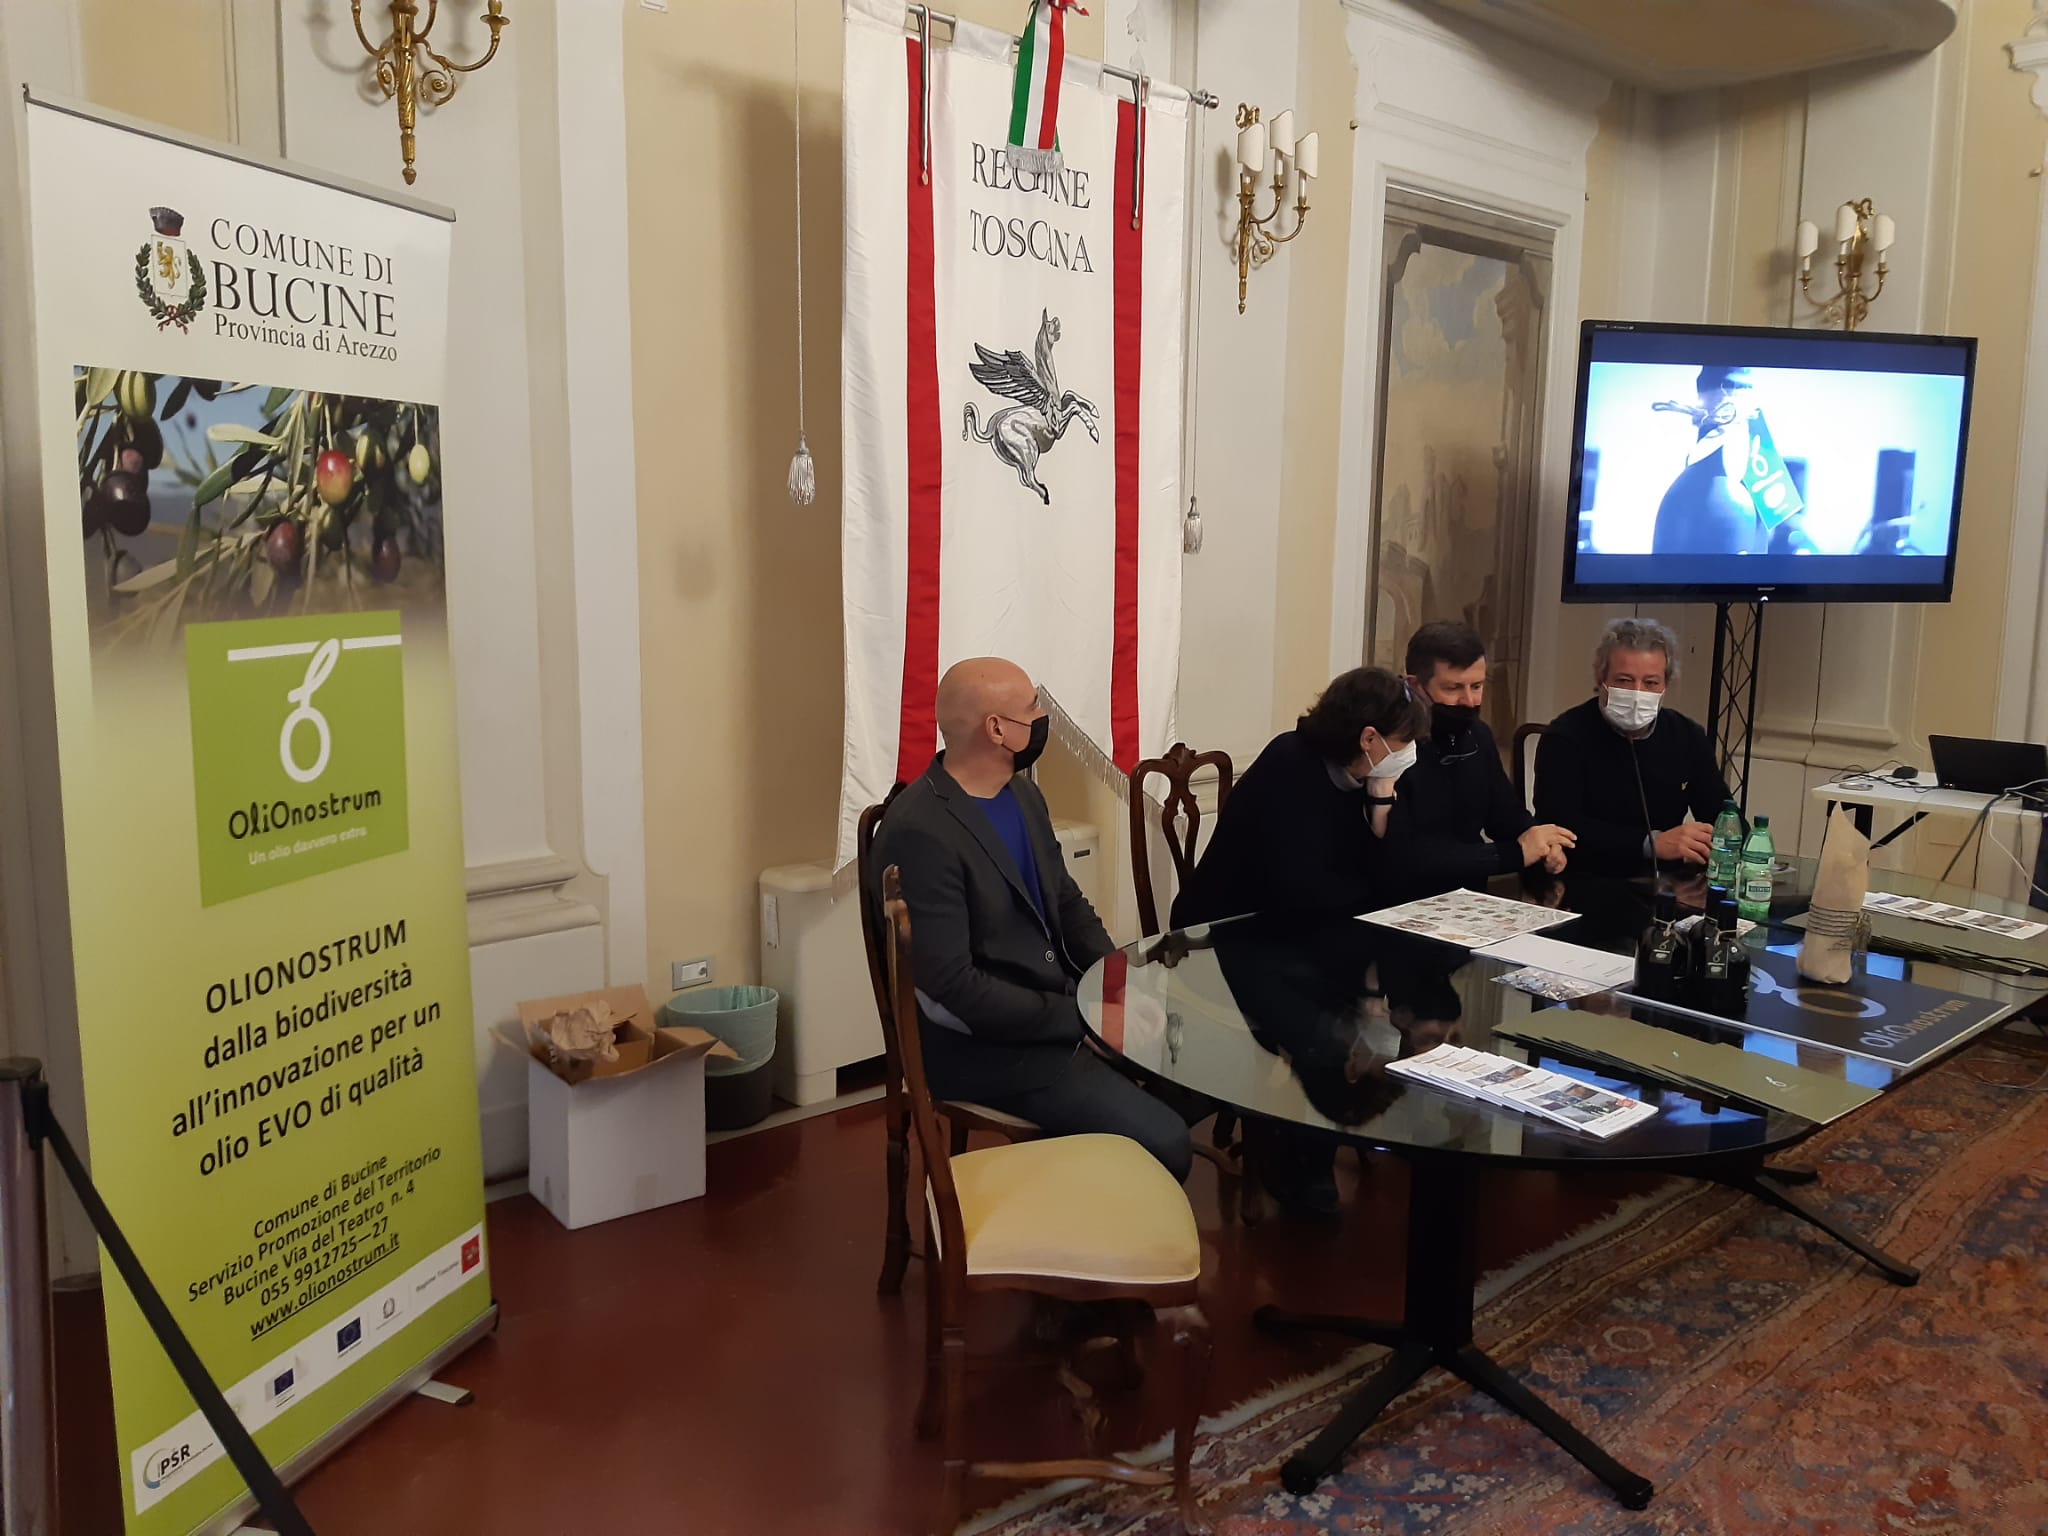 Alla Fieragricola di Verona il progetto “Olionostrum” finanziato con i fondi PSR